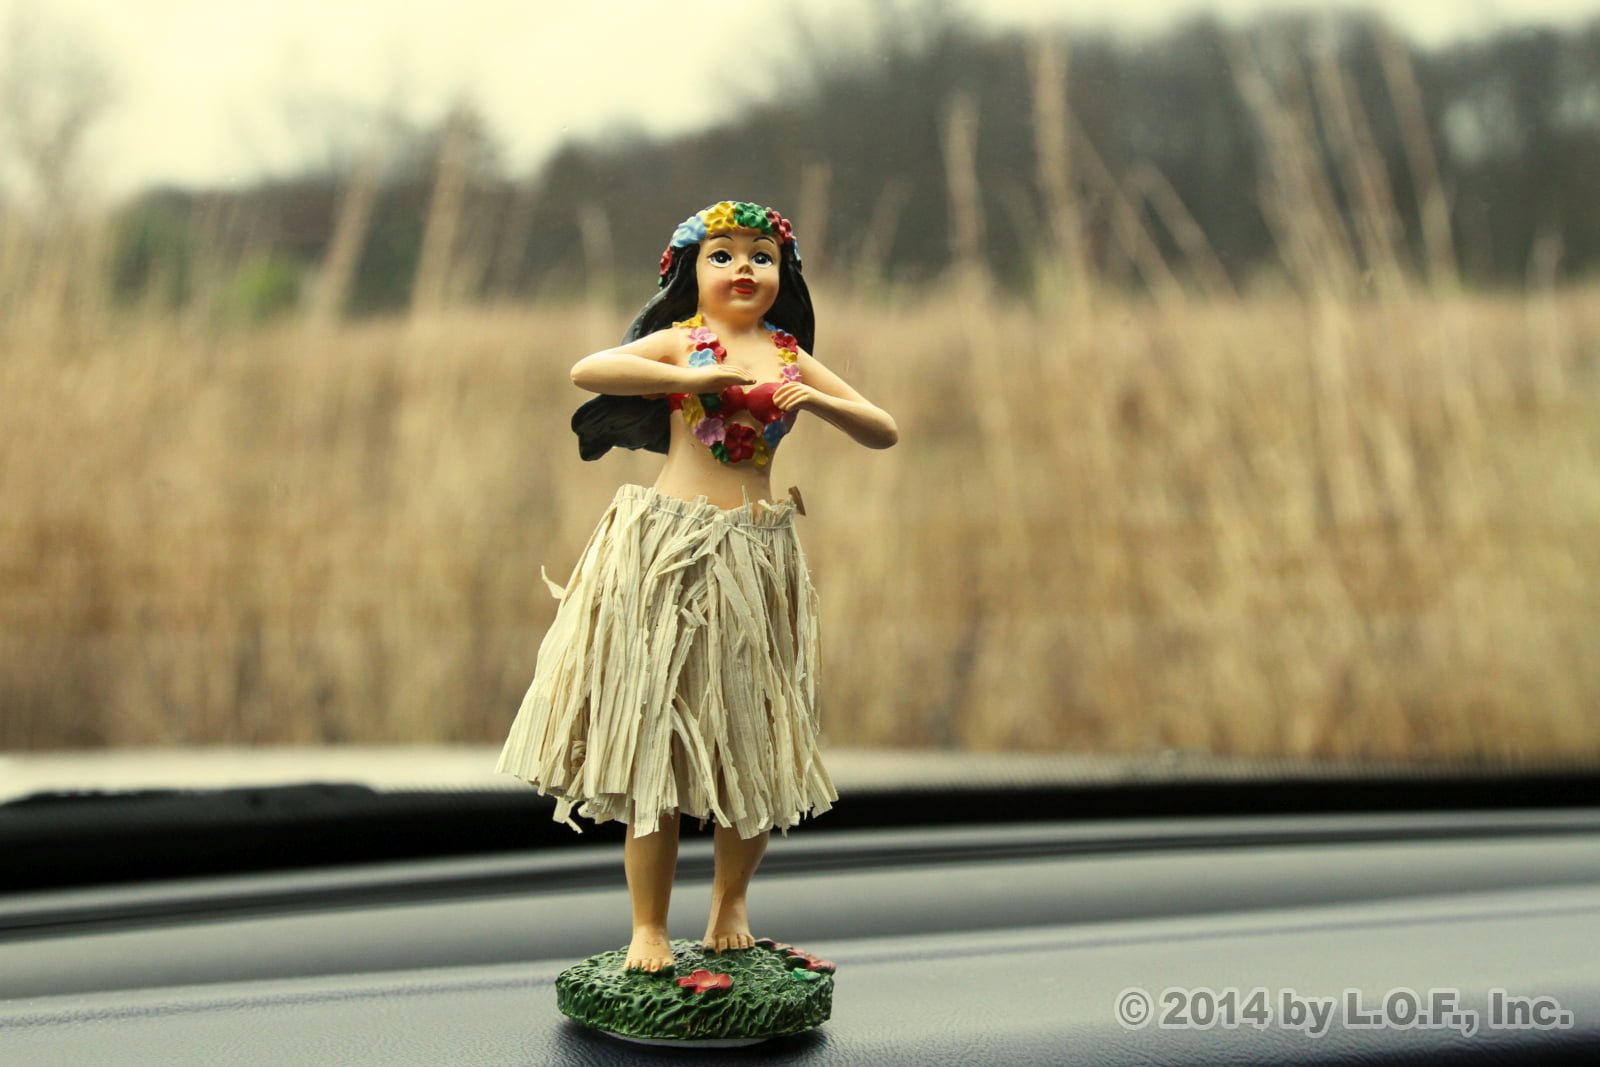 hula girl in car